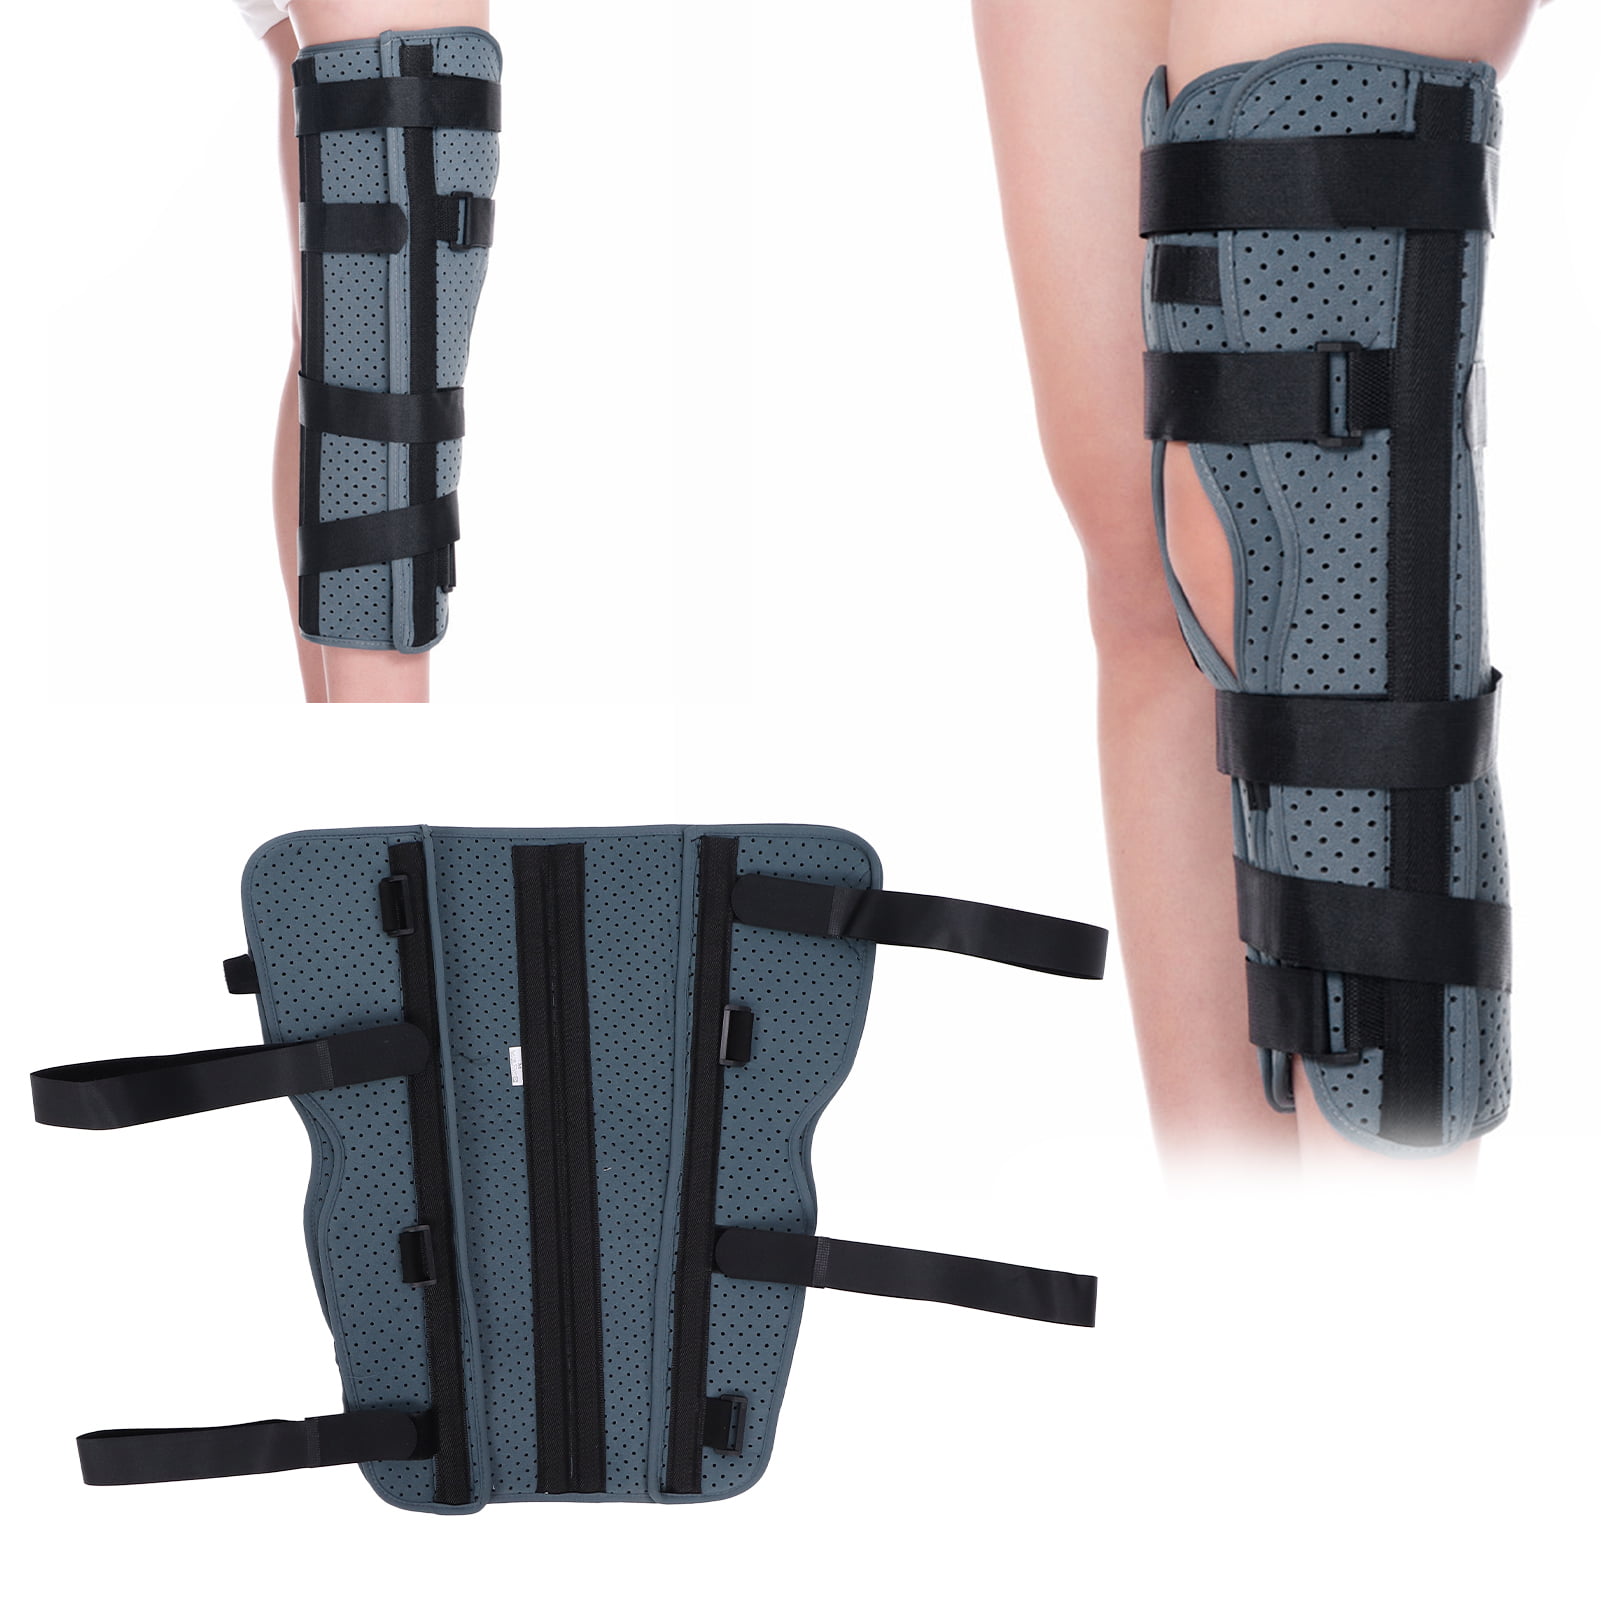 EBTOOLS Full Leg Brace,Adjustable Knee Joint Breathable Knee